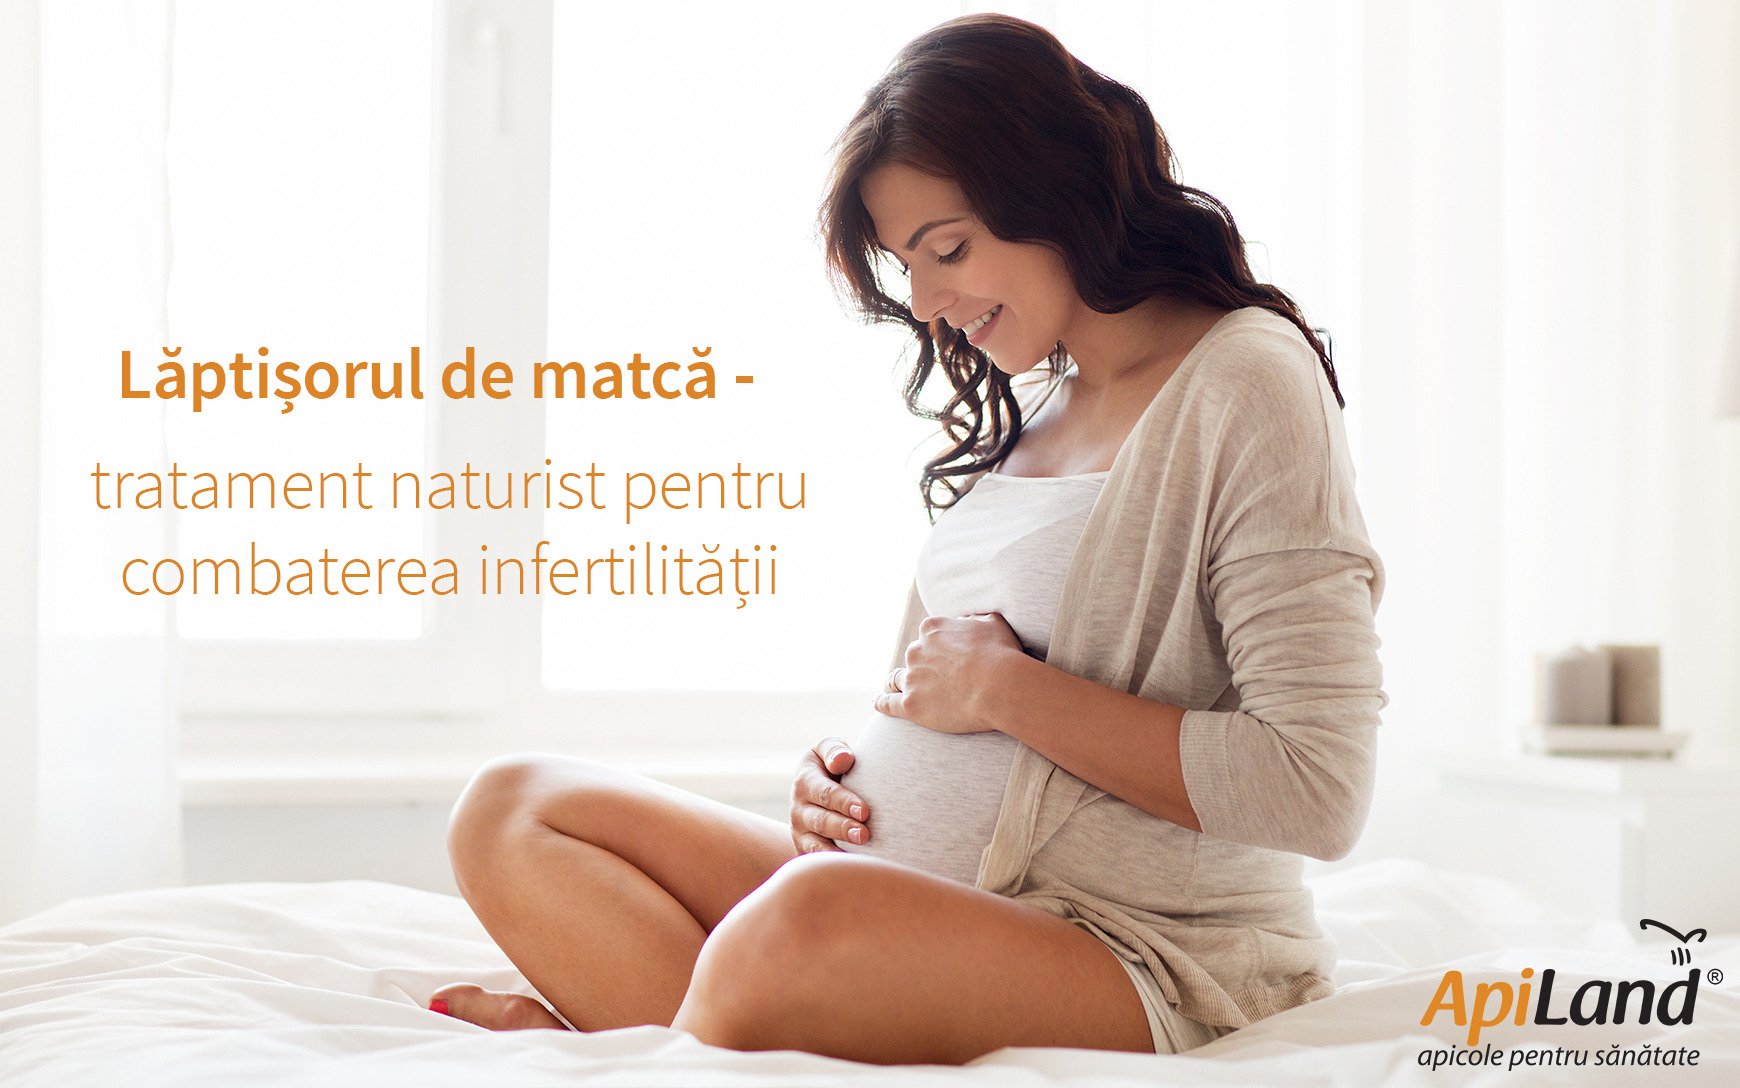 fertilitate femeie insarcinata laptisor de matca